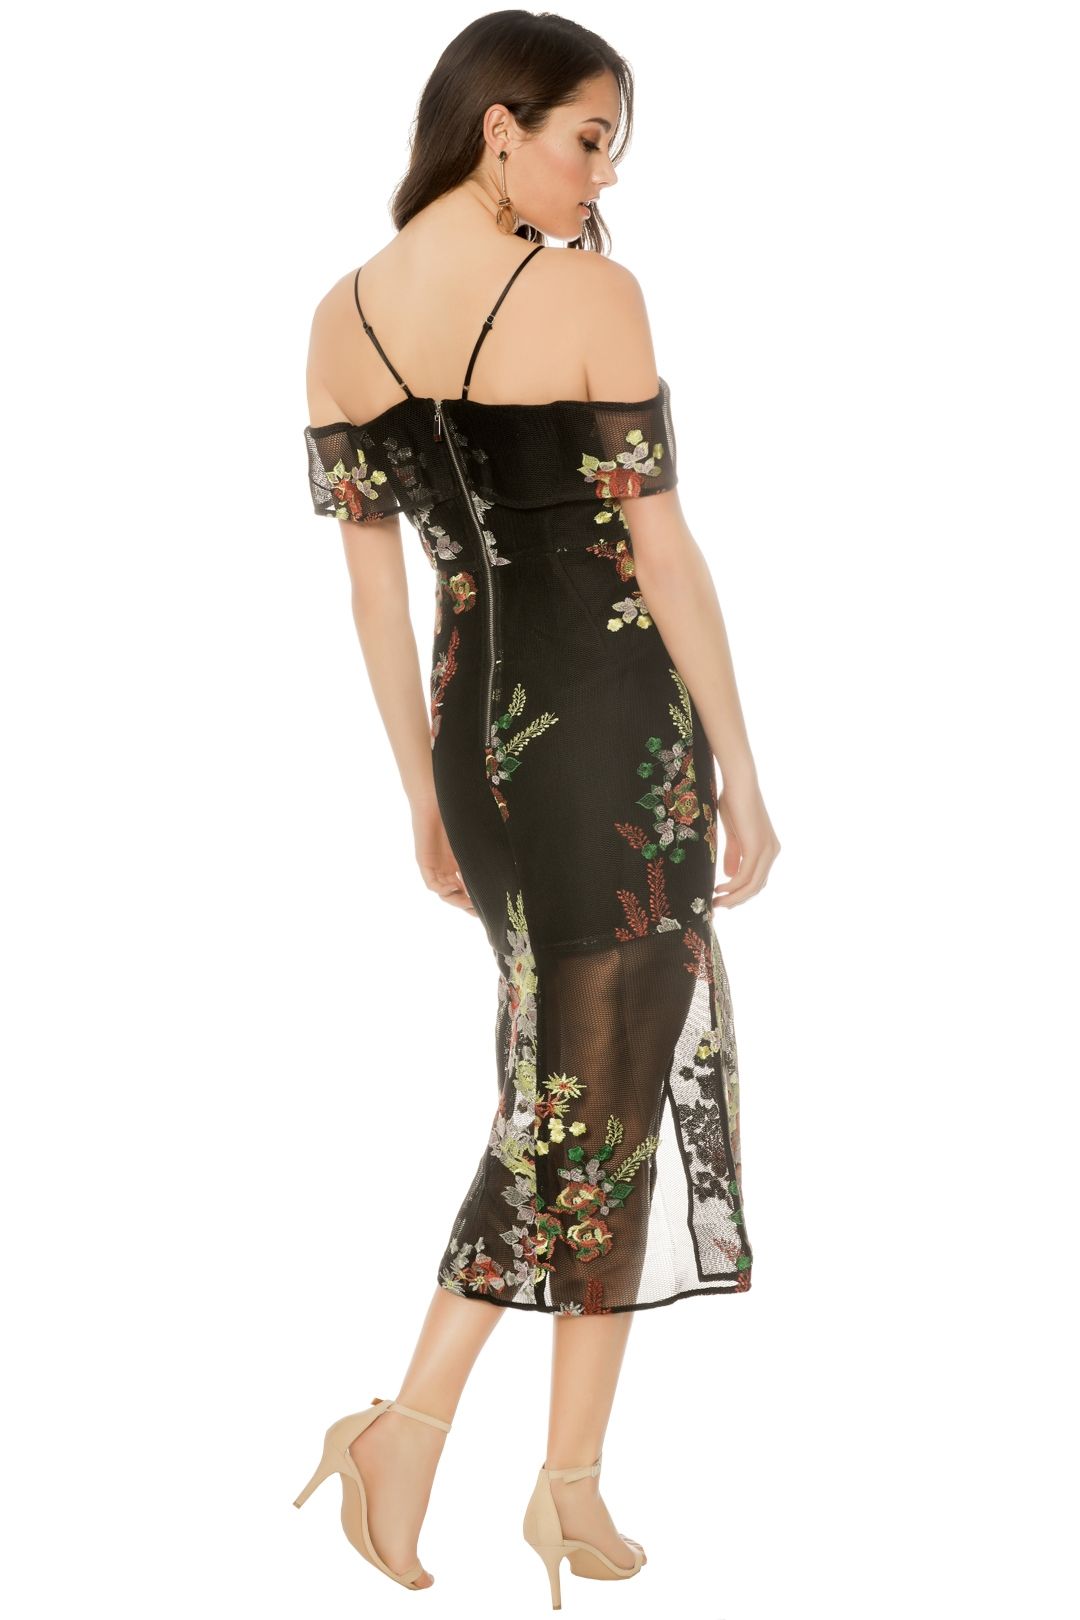 Premonition - Secret Garden Cocktail Dress - Black Floral - Back